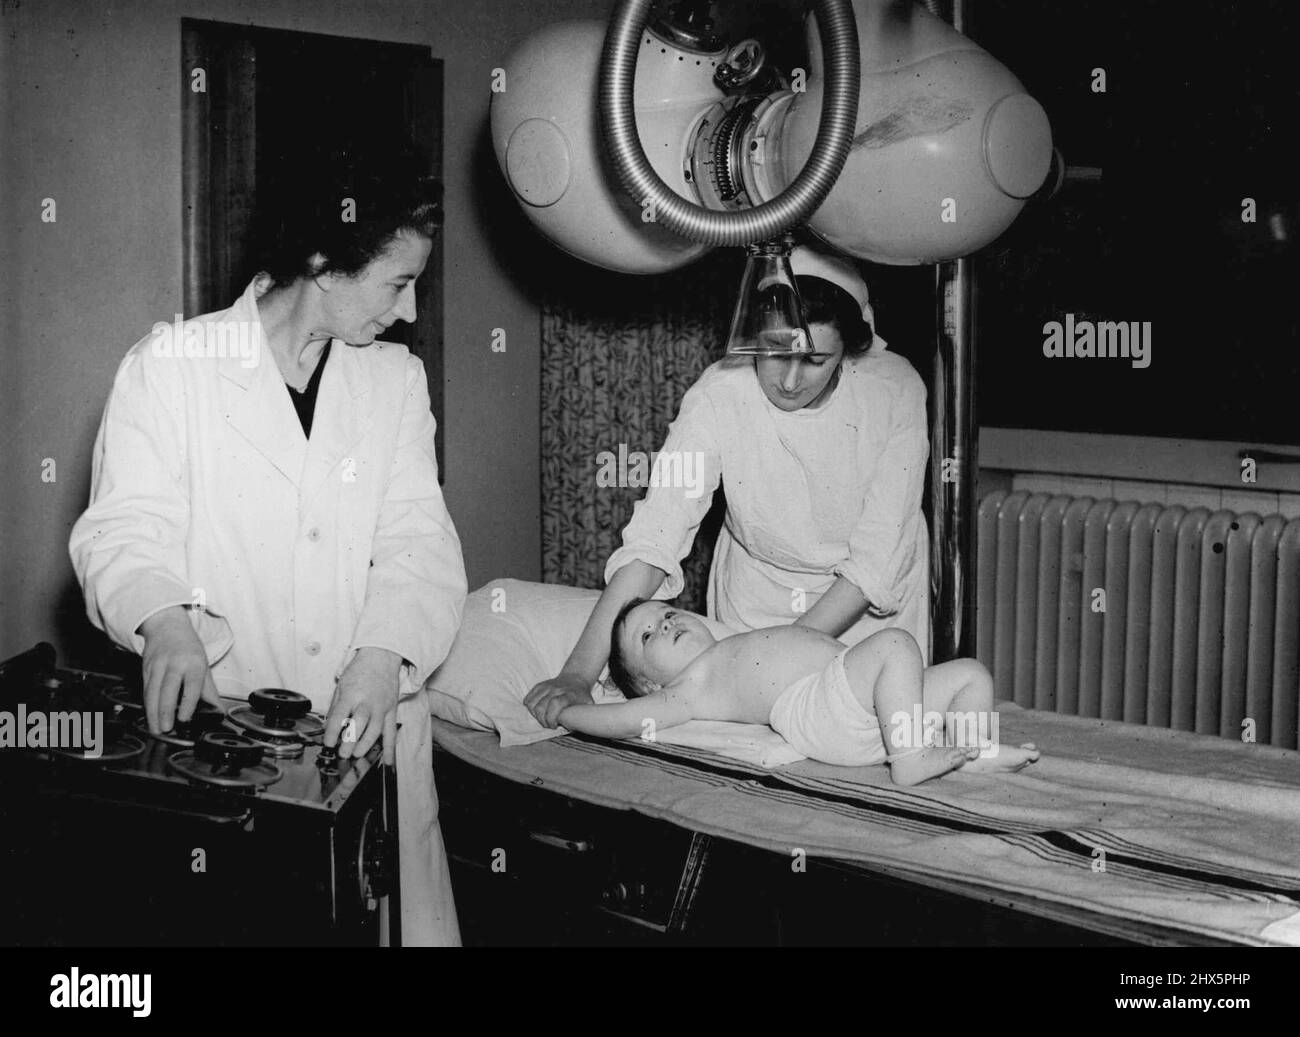 Englands führendes Fever Hospital -- Besuch des LCC North-Eastern Hospital. In der Radiologieabteilung: Ein Kind, das geröntgt wird. 21. September 1951. (Foto von Pictorial Press). Stockfoto